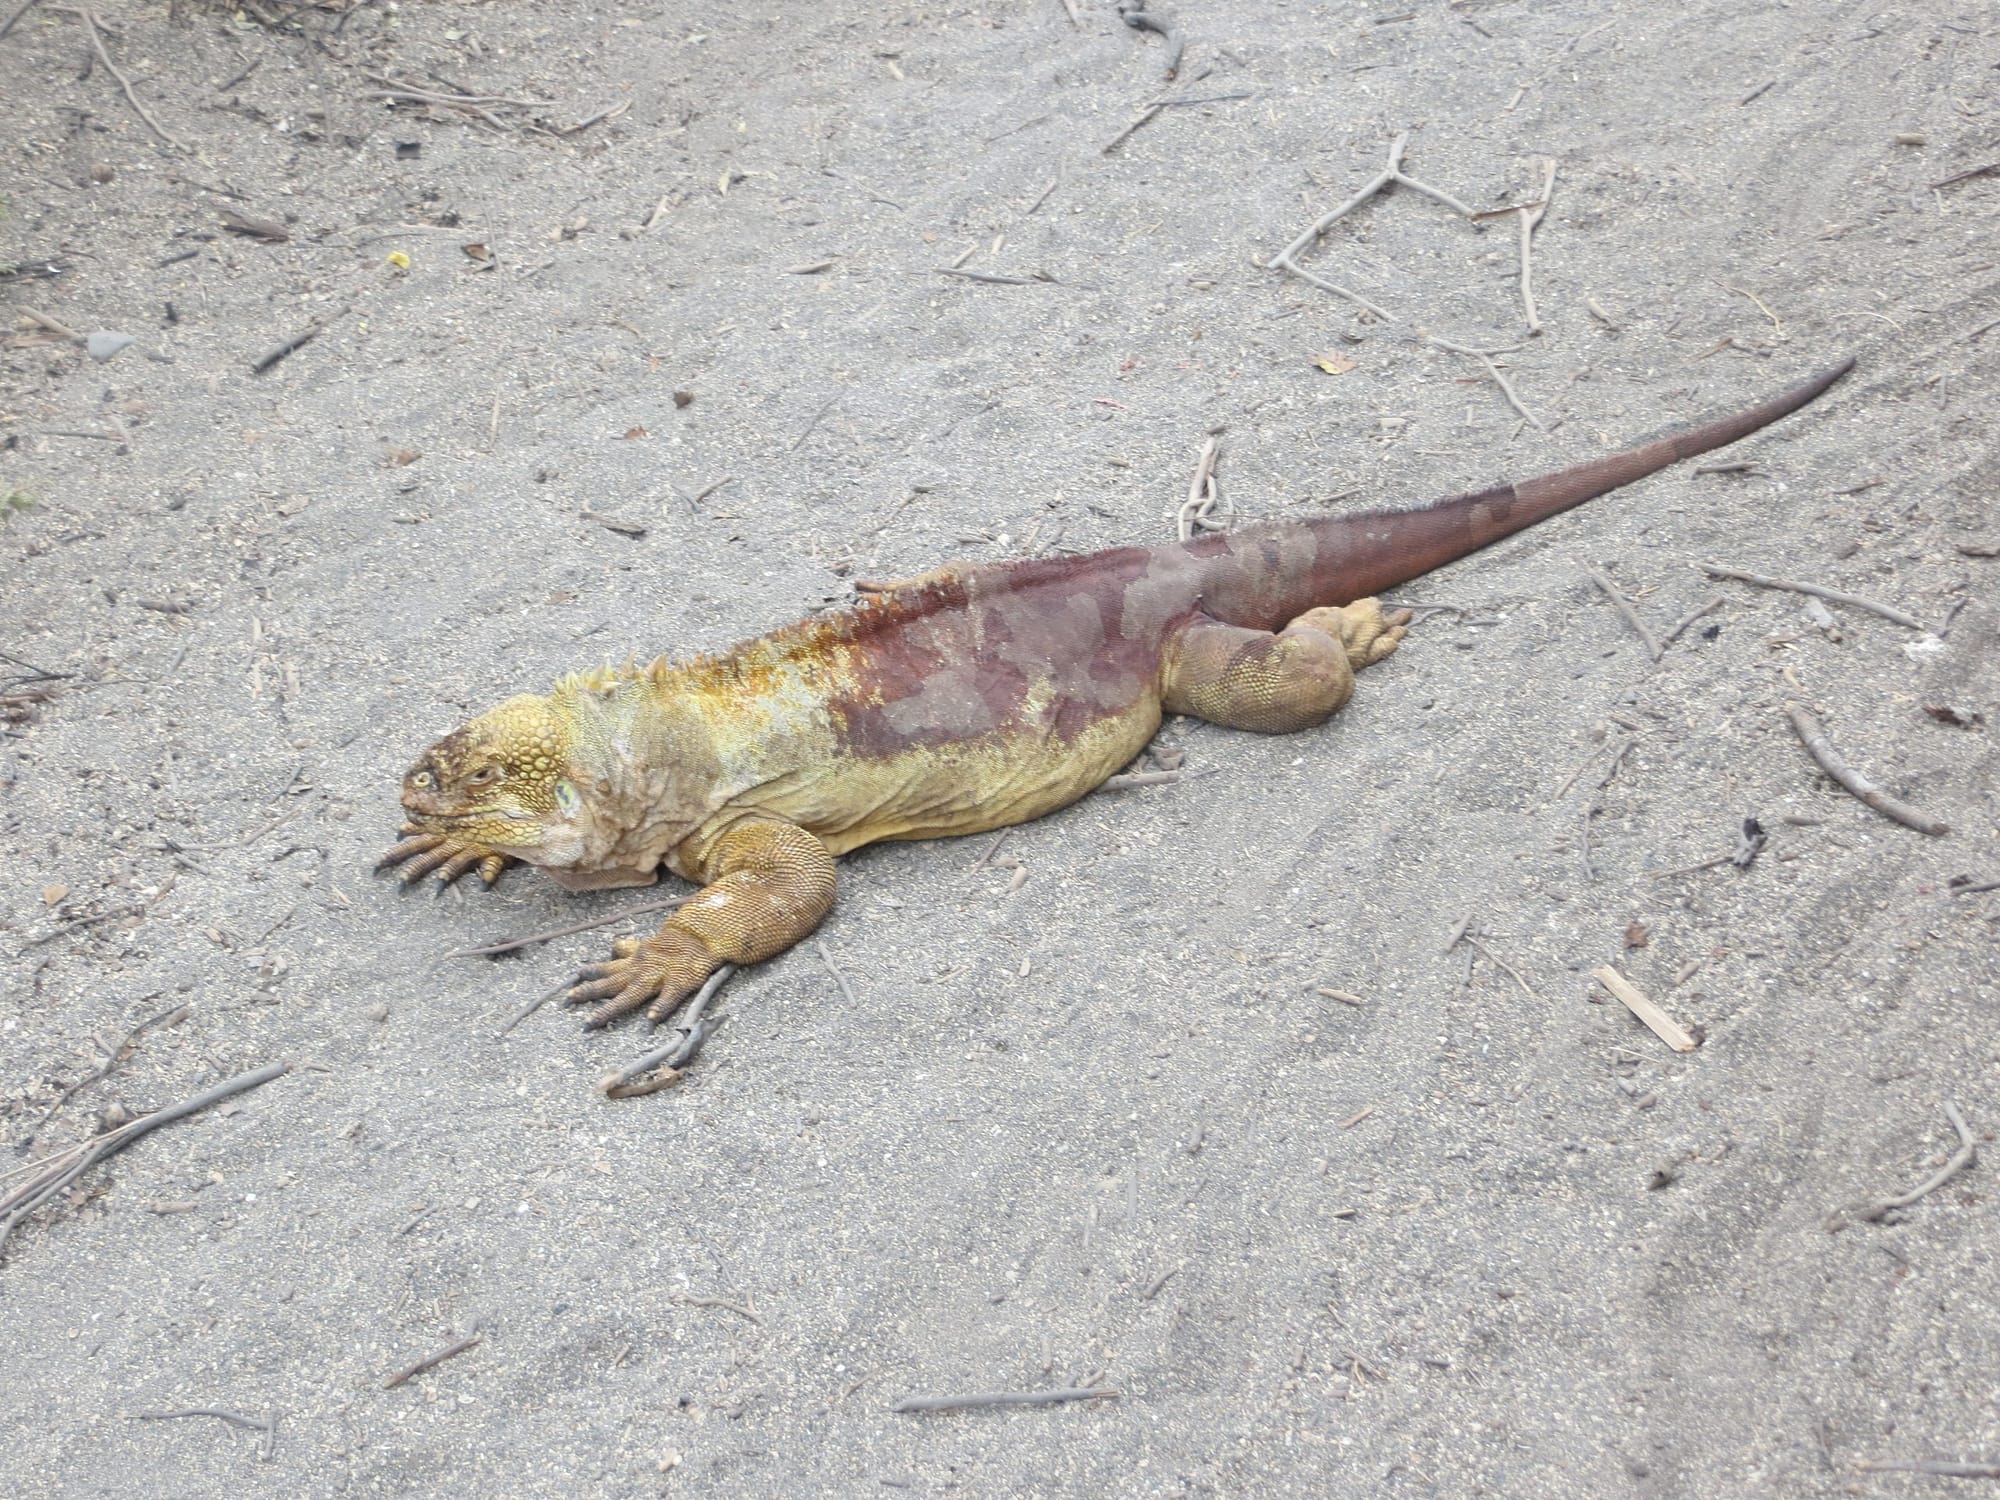 Galapagos Islands land iguana